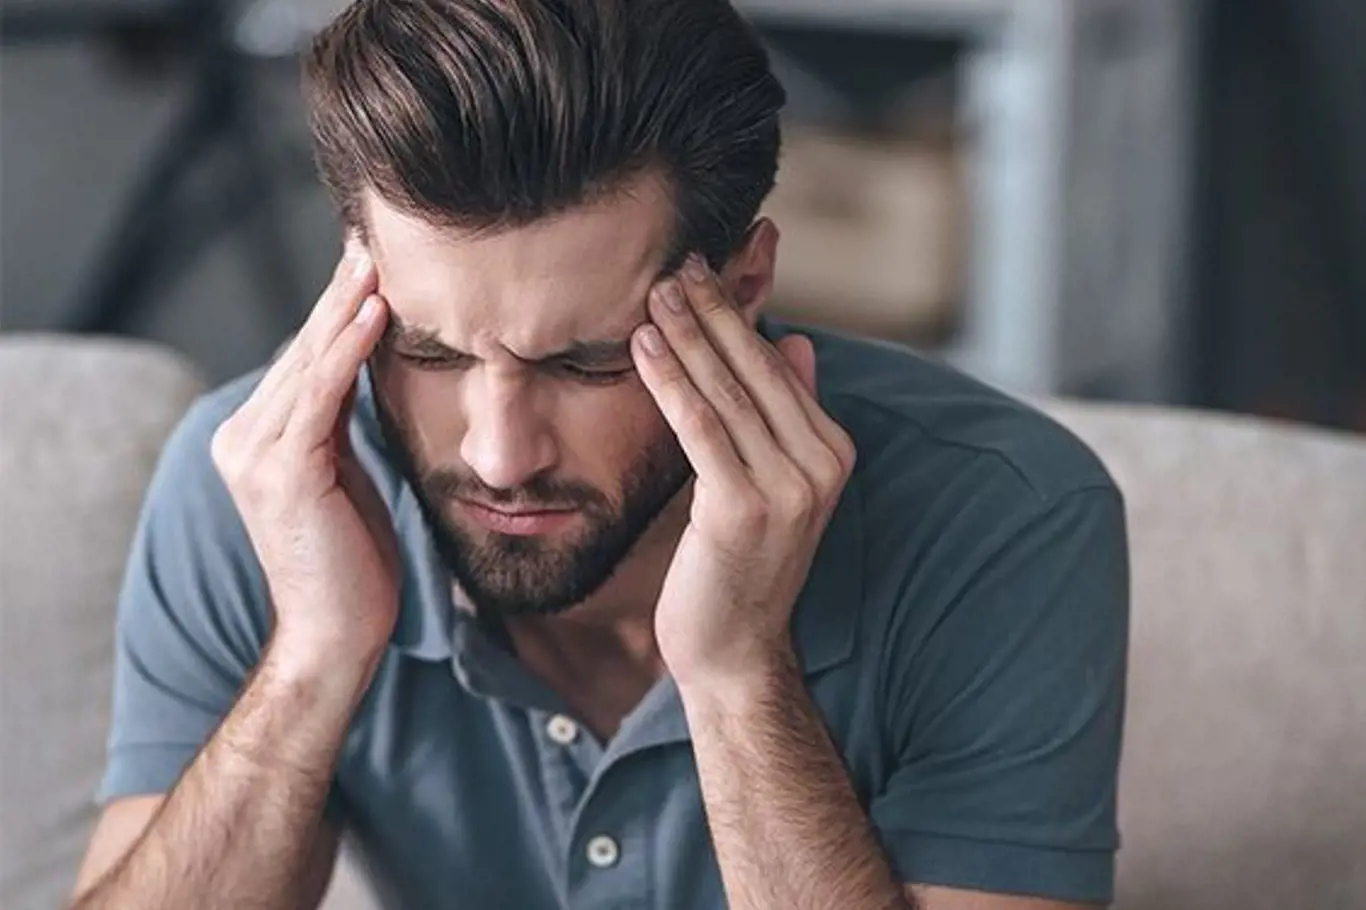 Jedním ze symptomů může být bolest hlavy